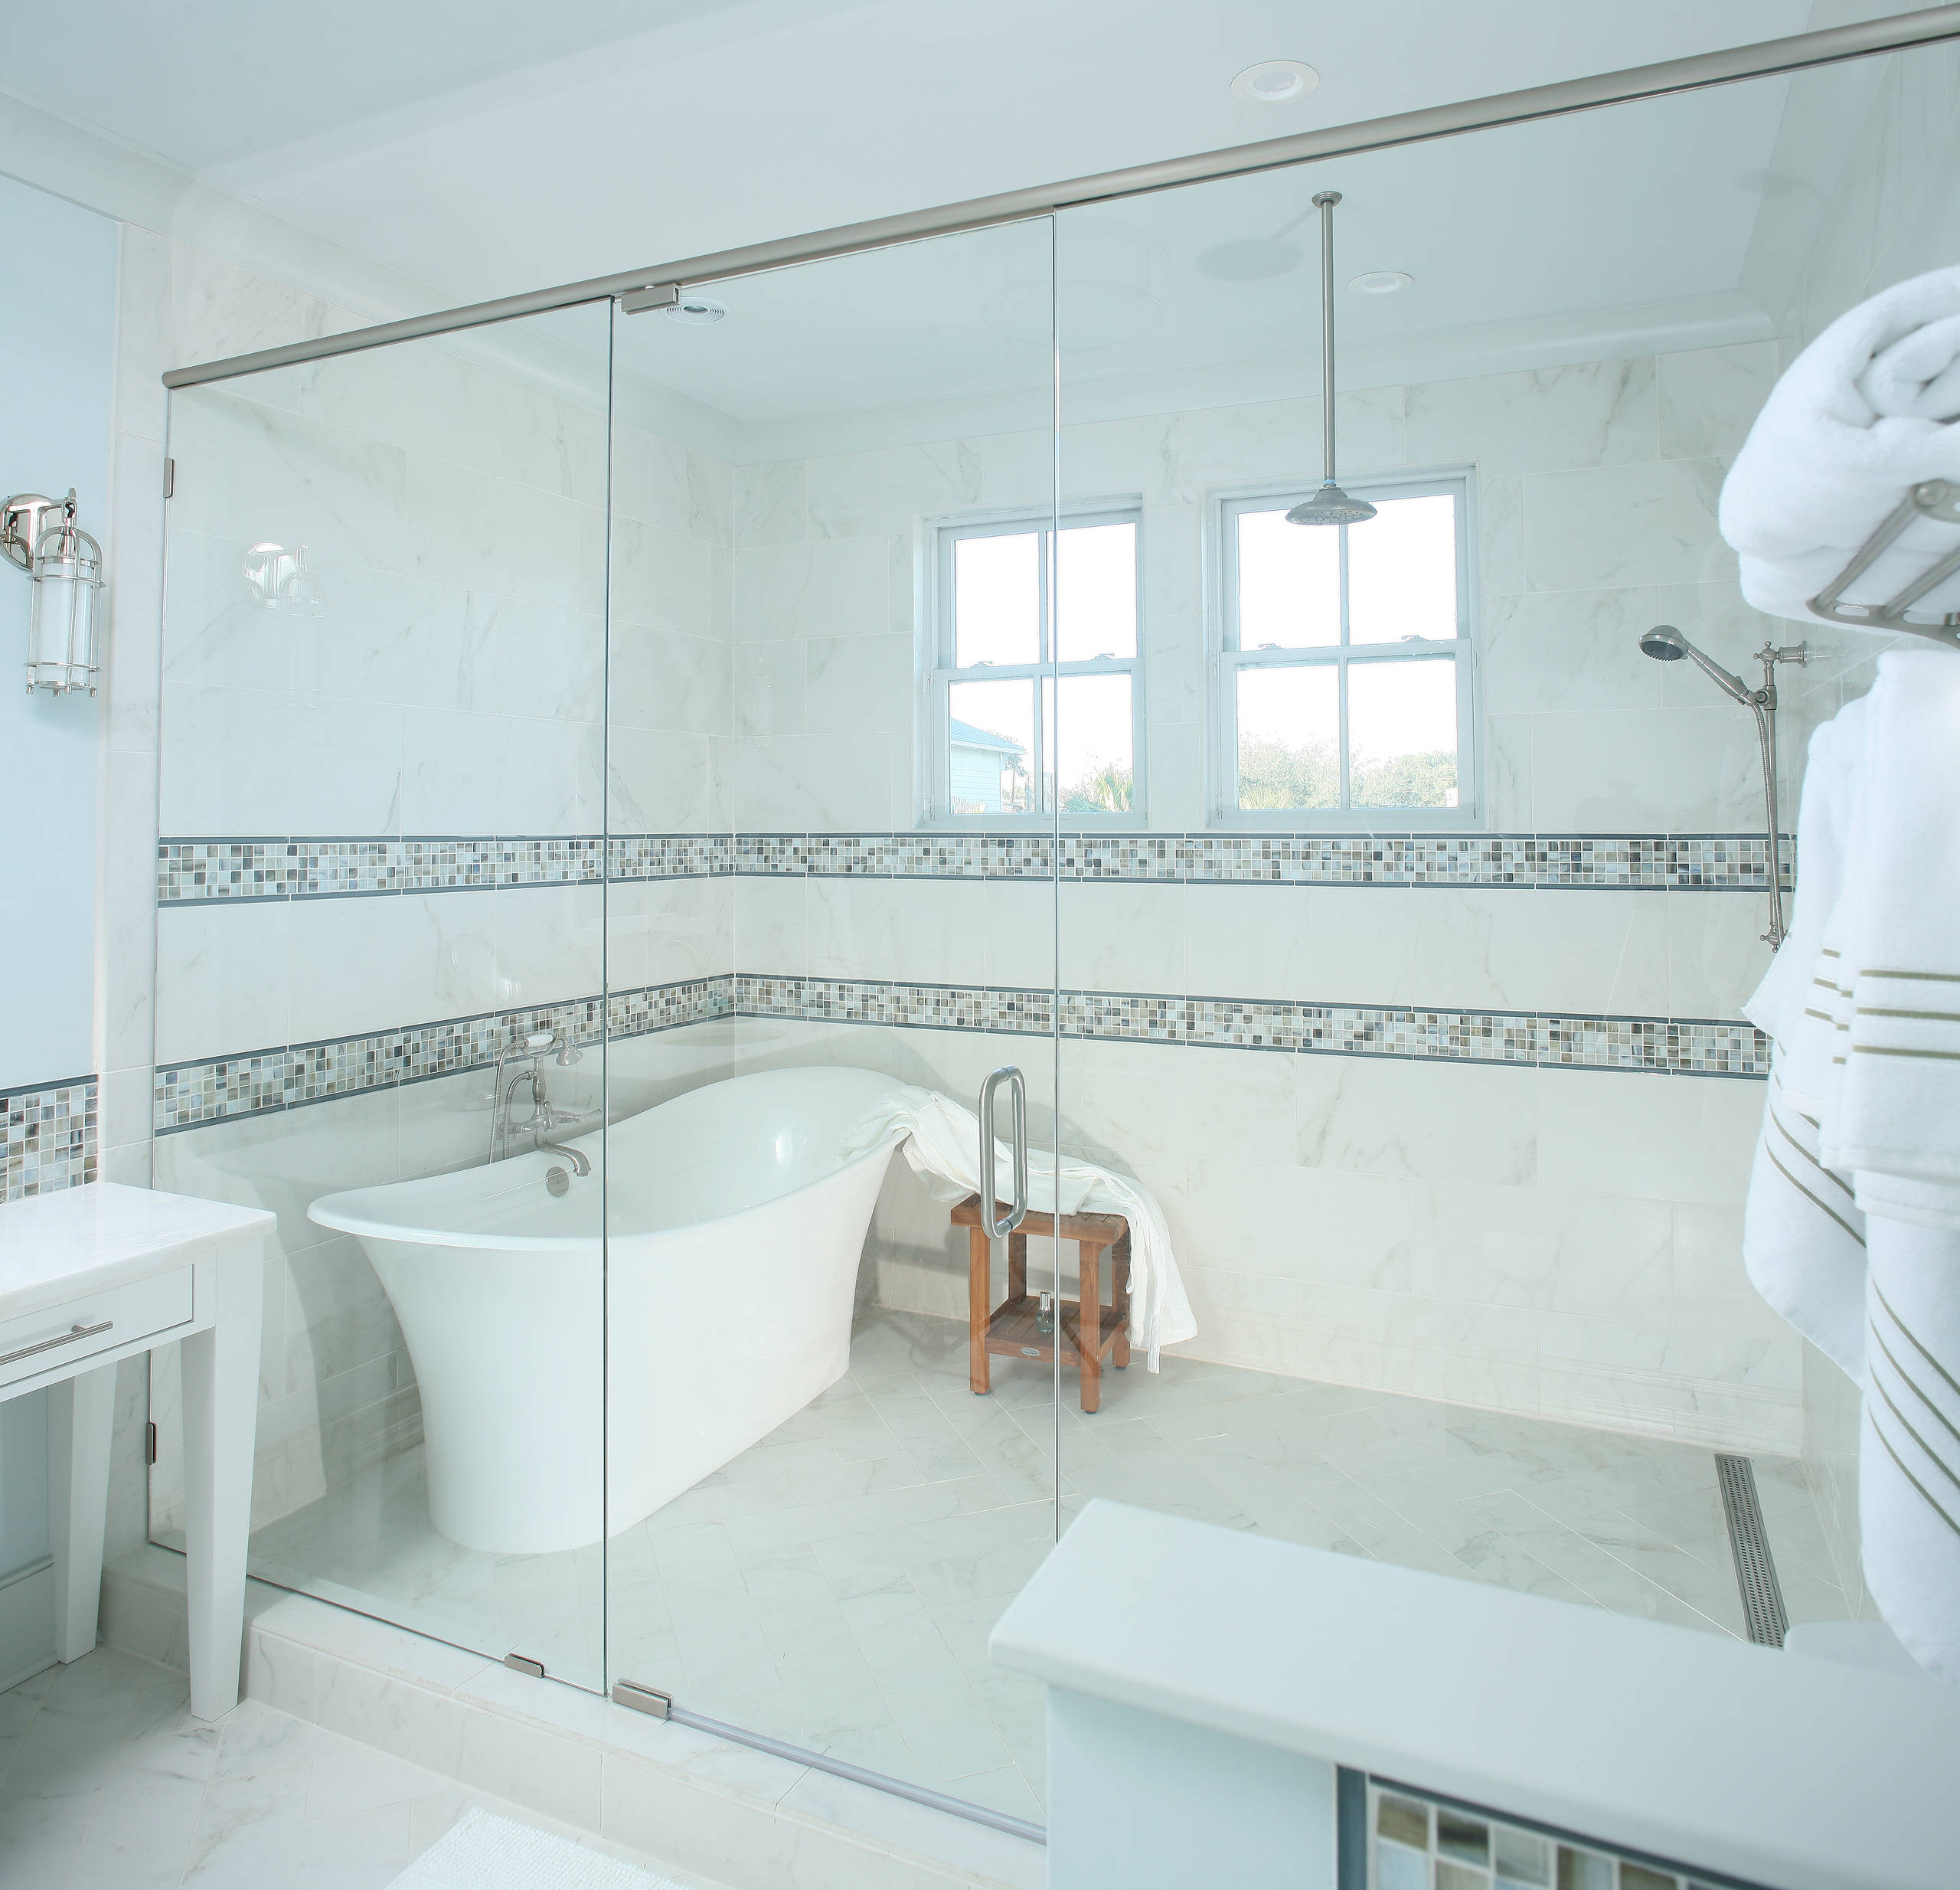 Tub Inside Shower - Photos & Ideas | Houzz